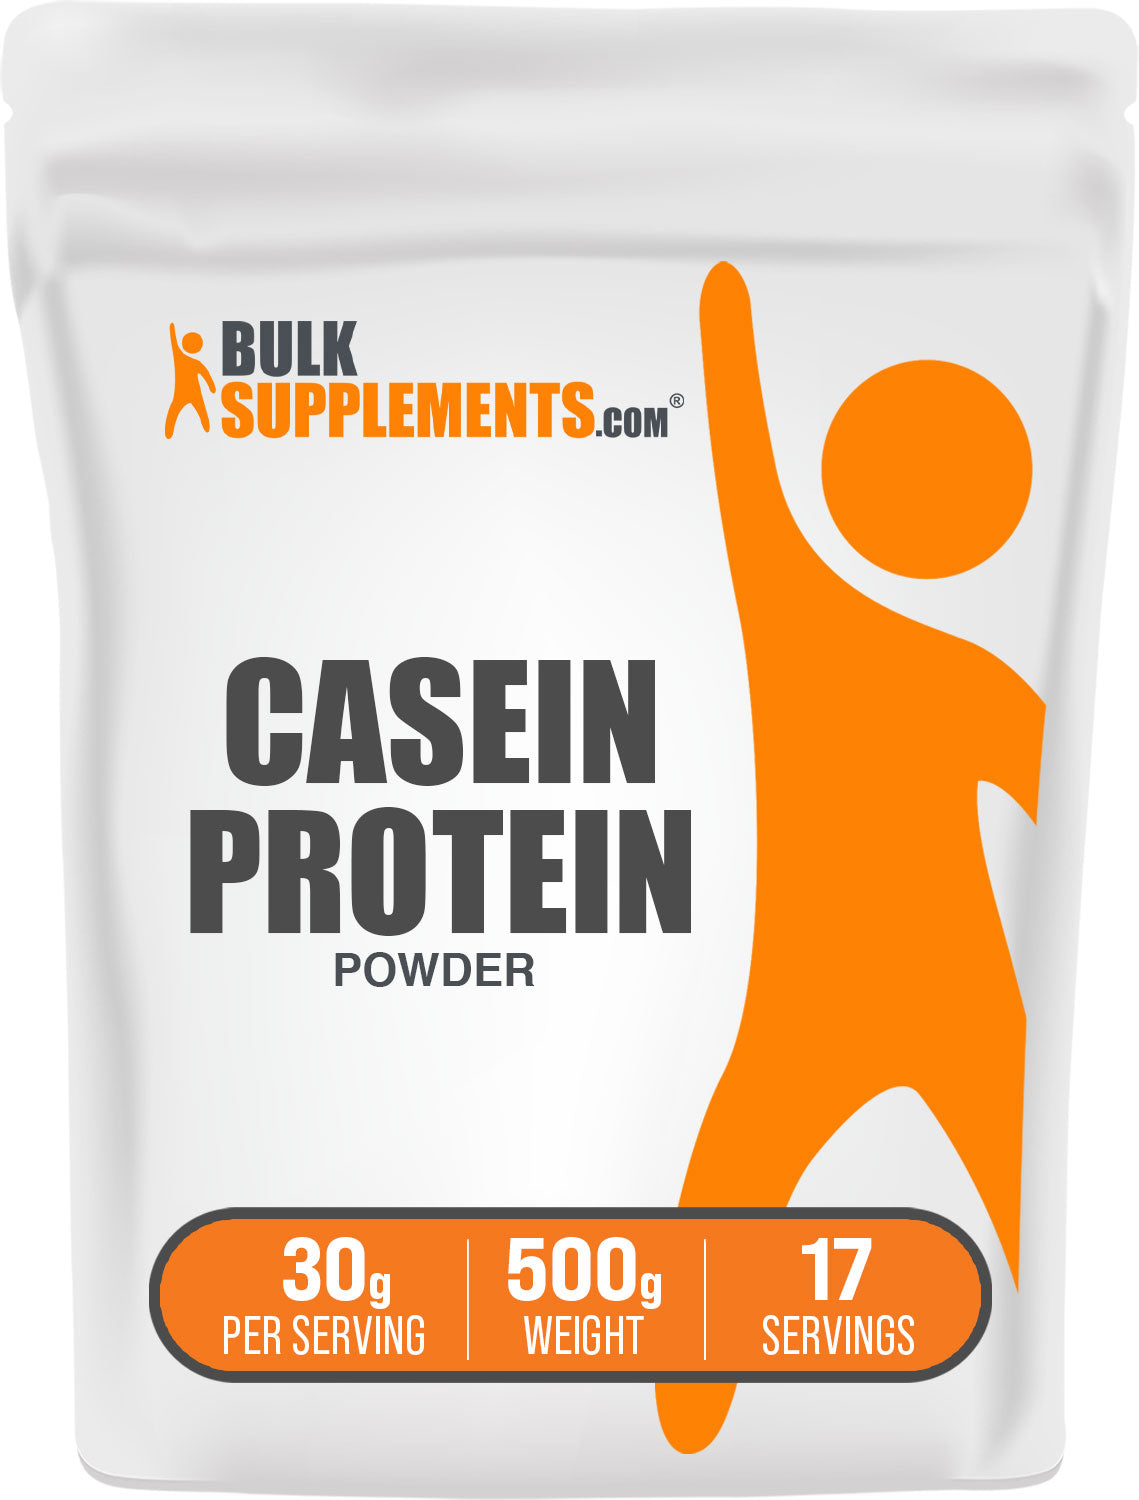 500g casein protein powder